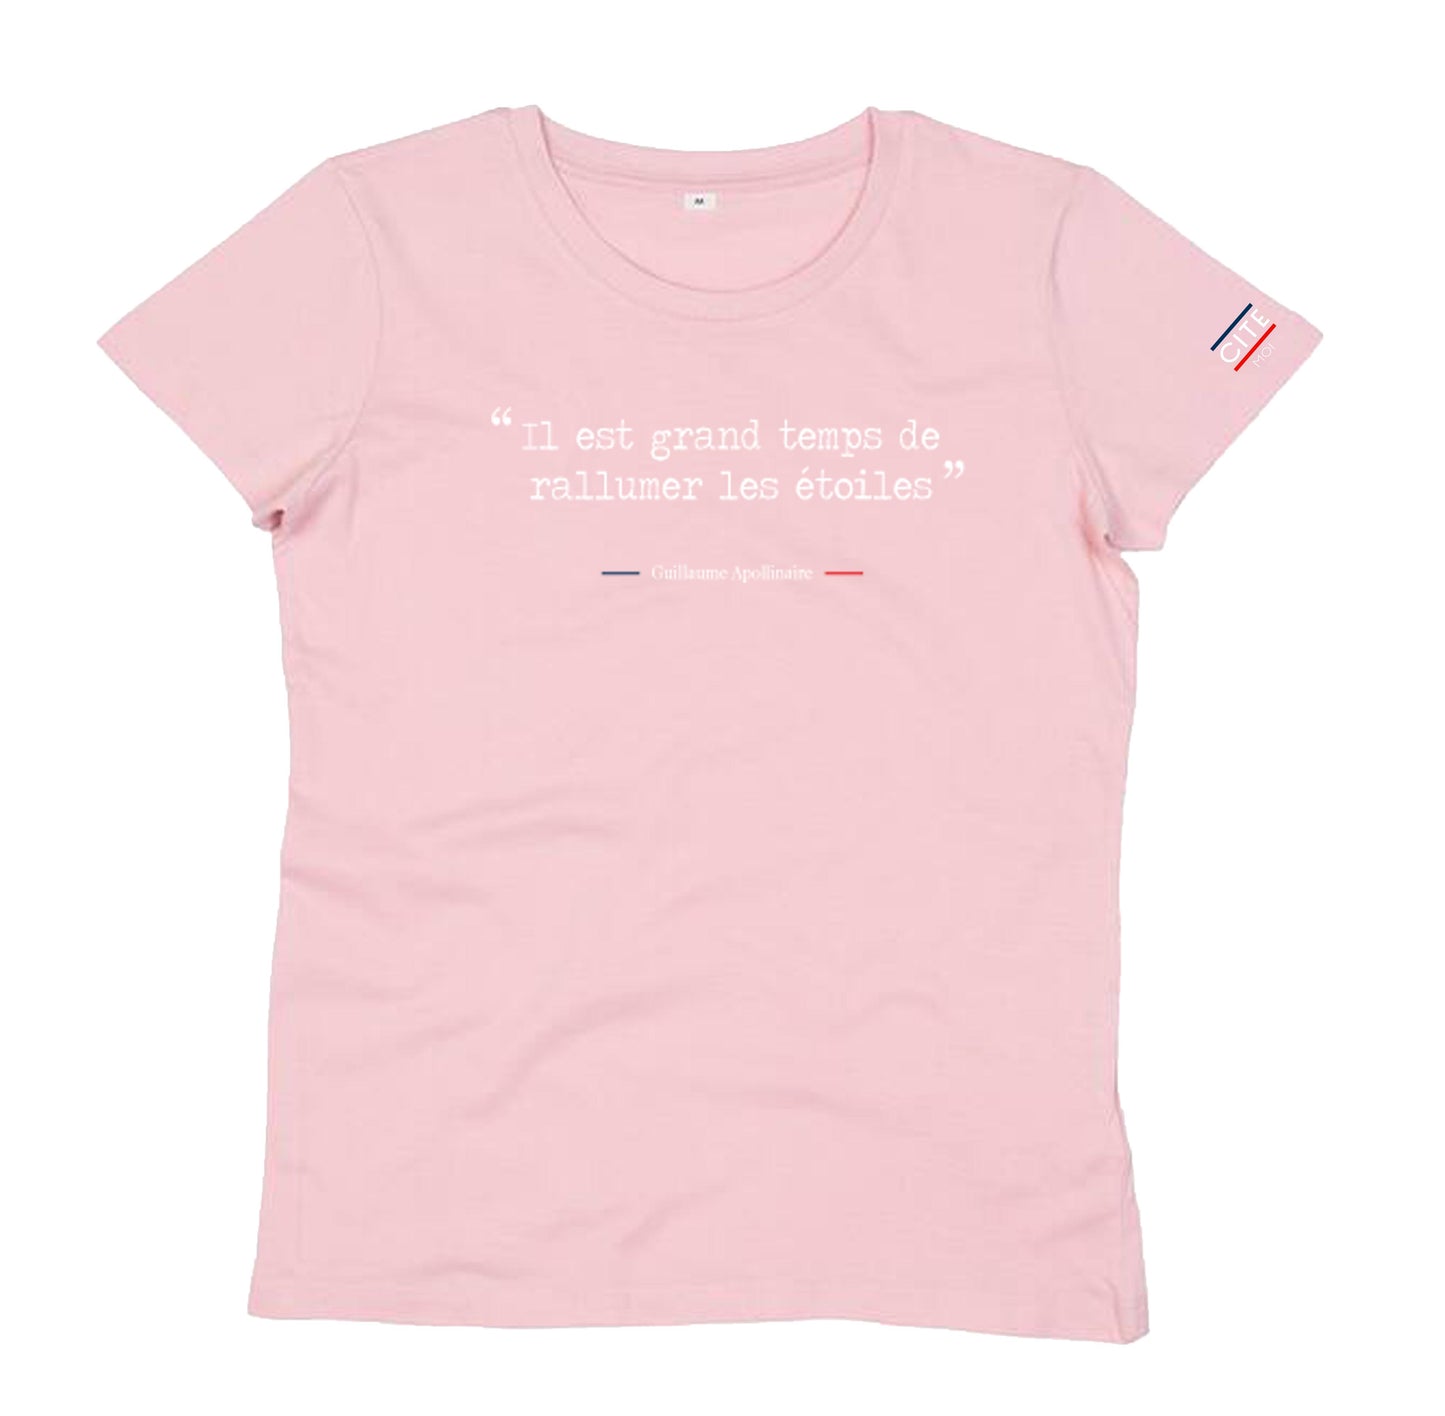 Teeshirt femme coton bio-  Il est grand temps de rallumer les étoiles - Guillaume Apollinaire